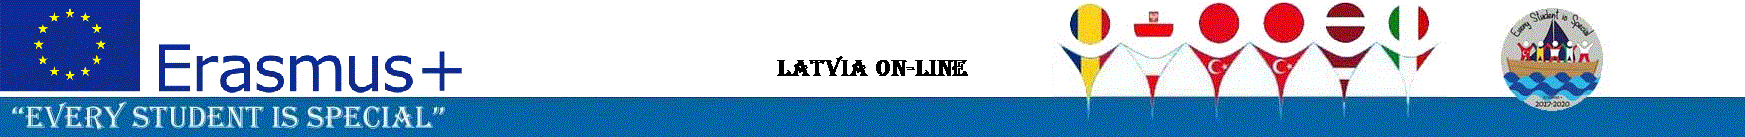 LATVIA ON-LINE